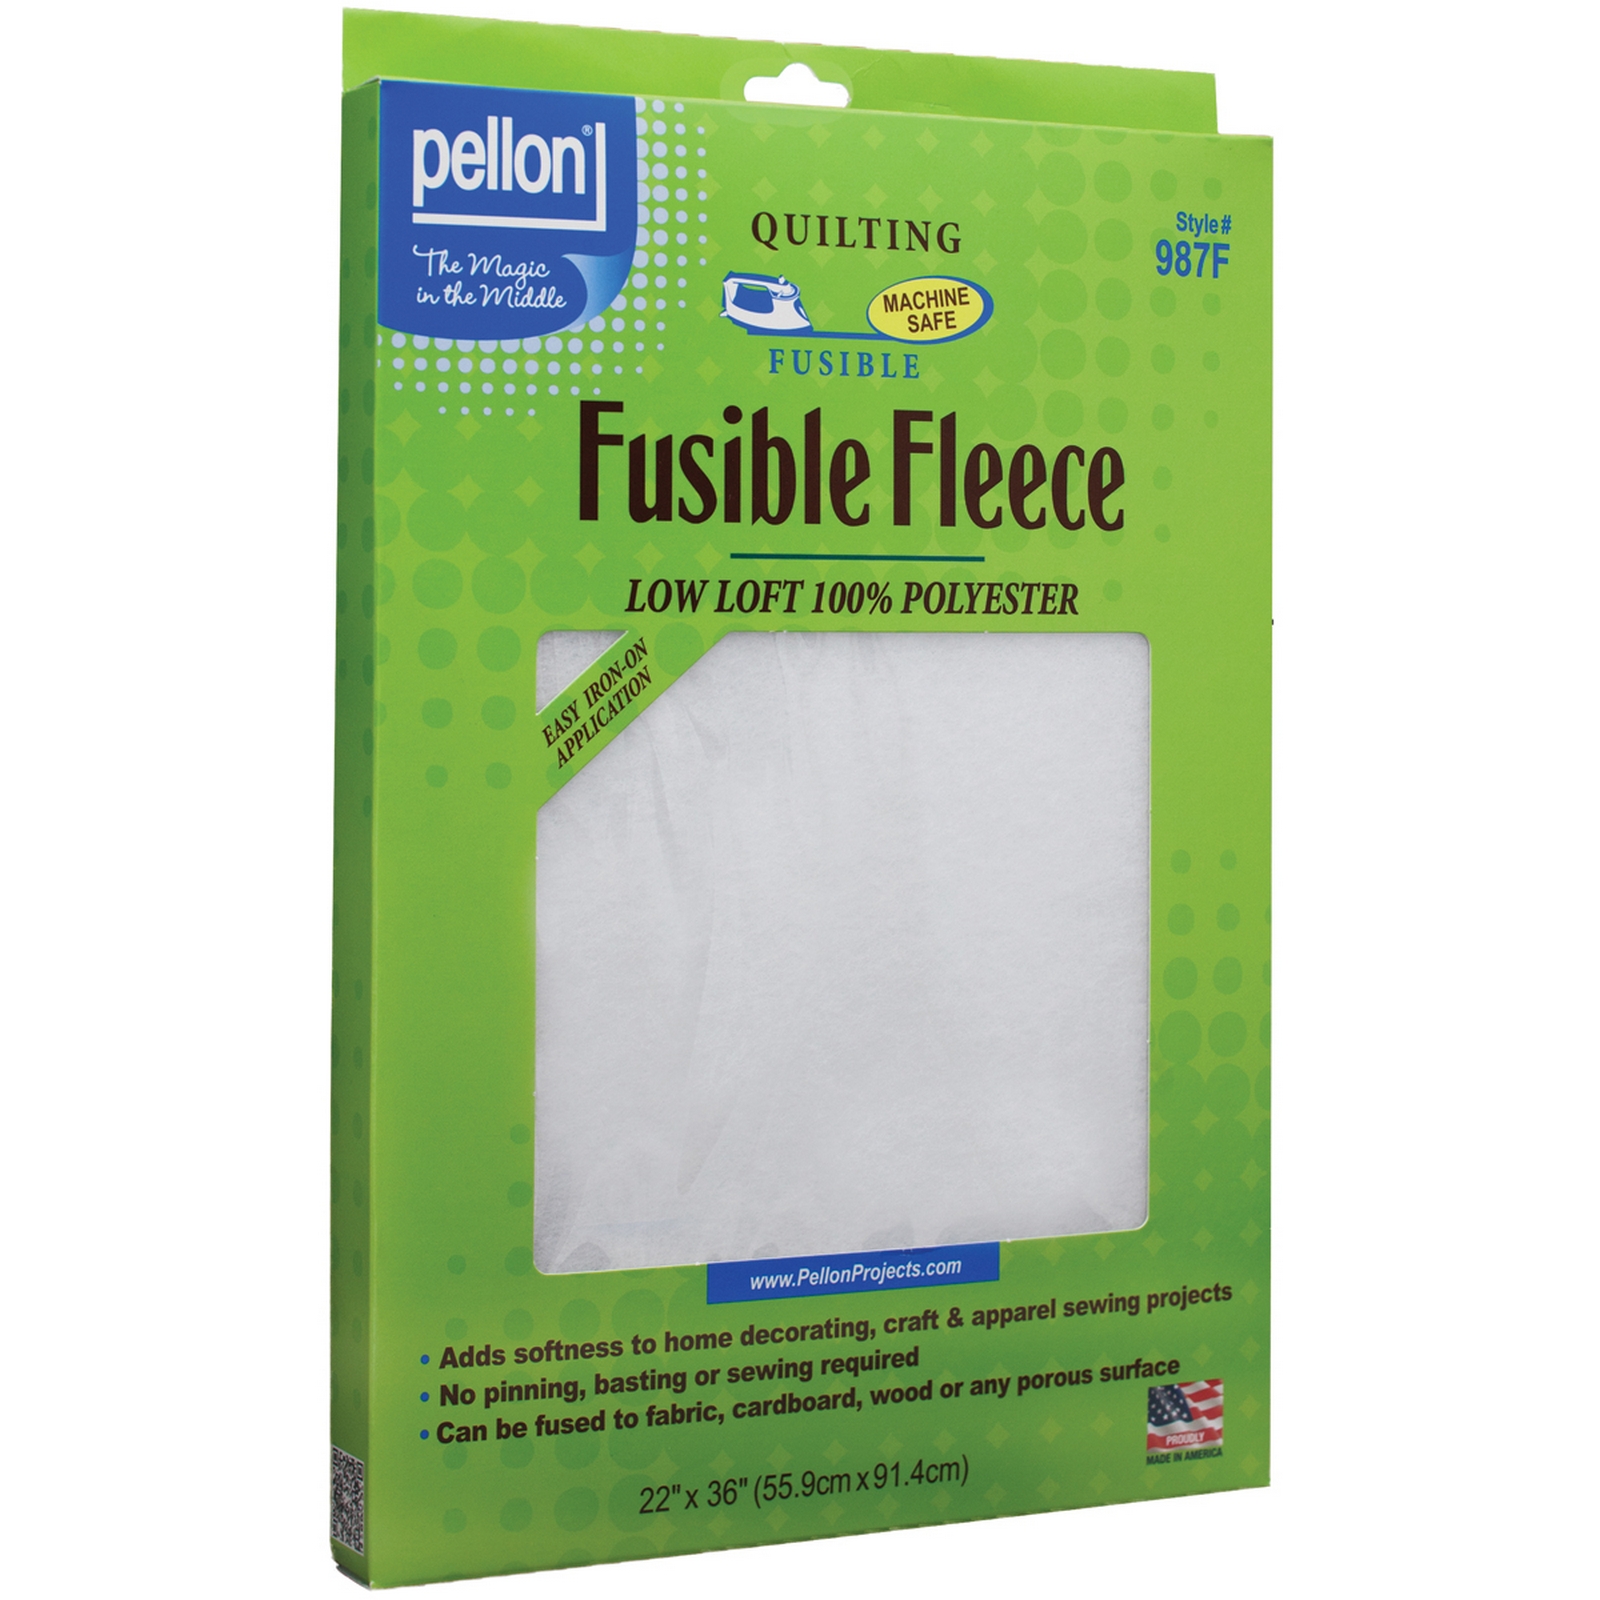 Pellon Fusible Fleece 22"X36"